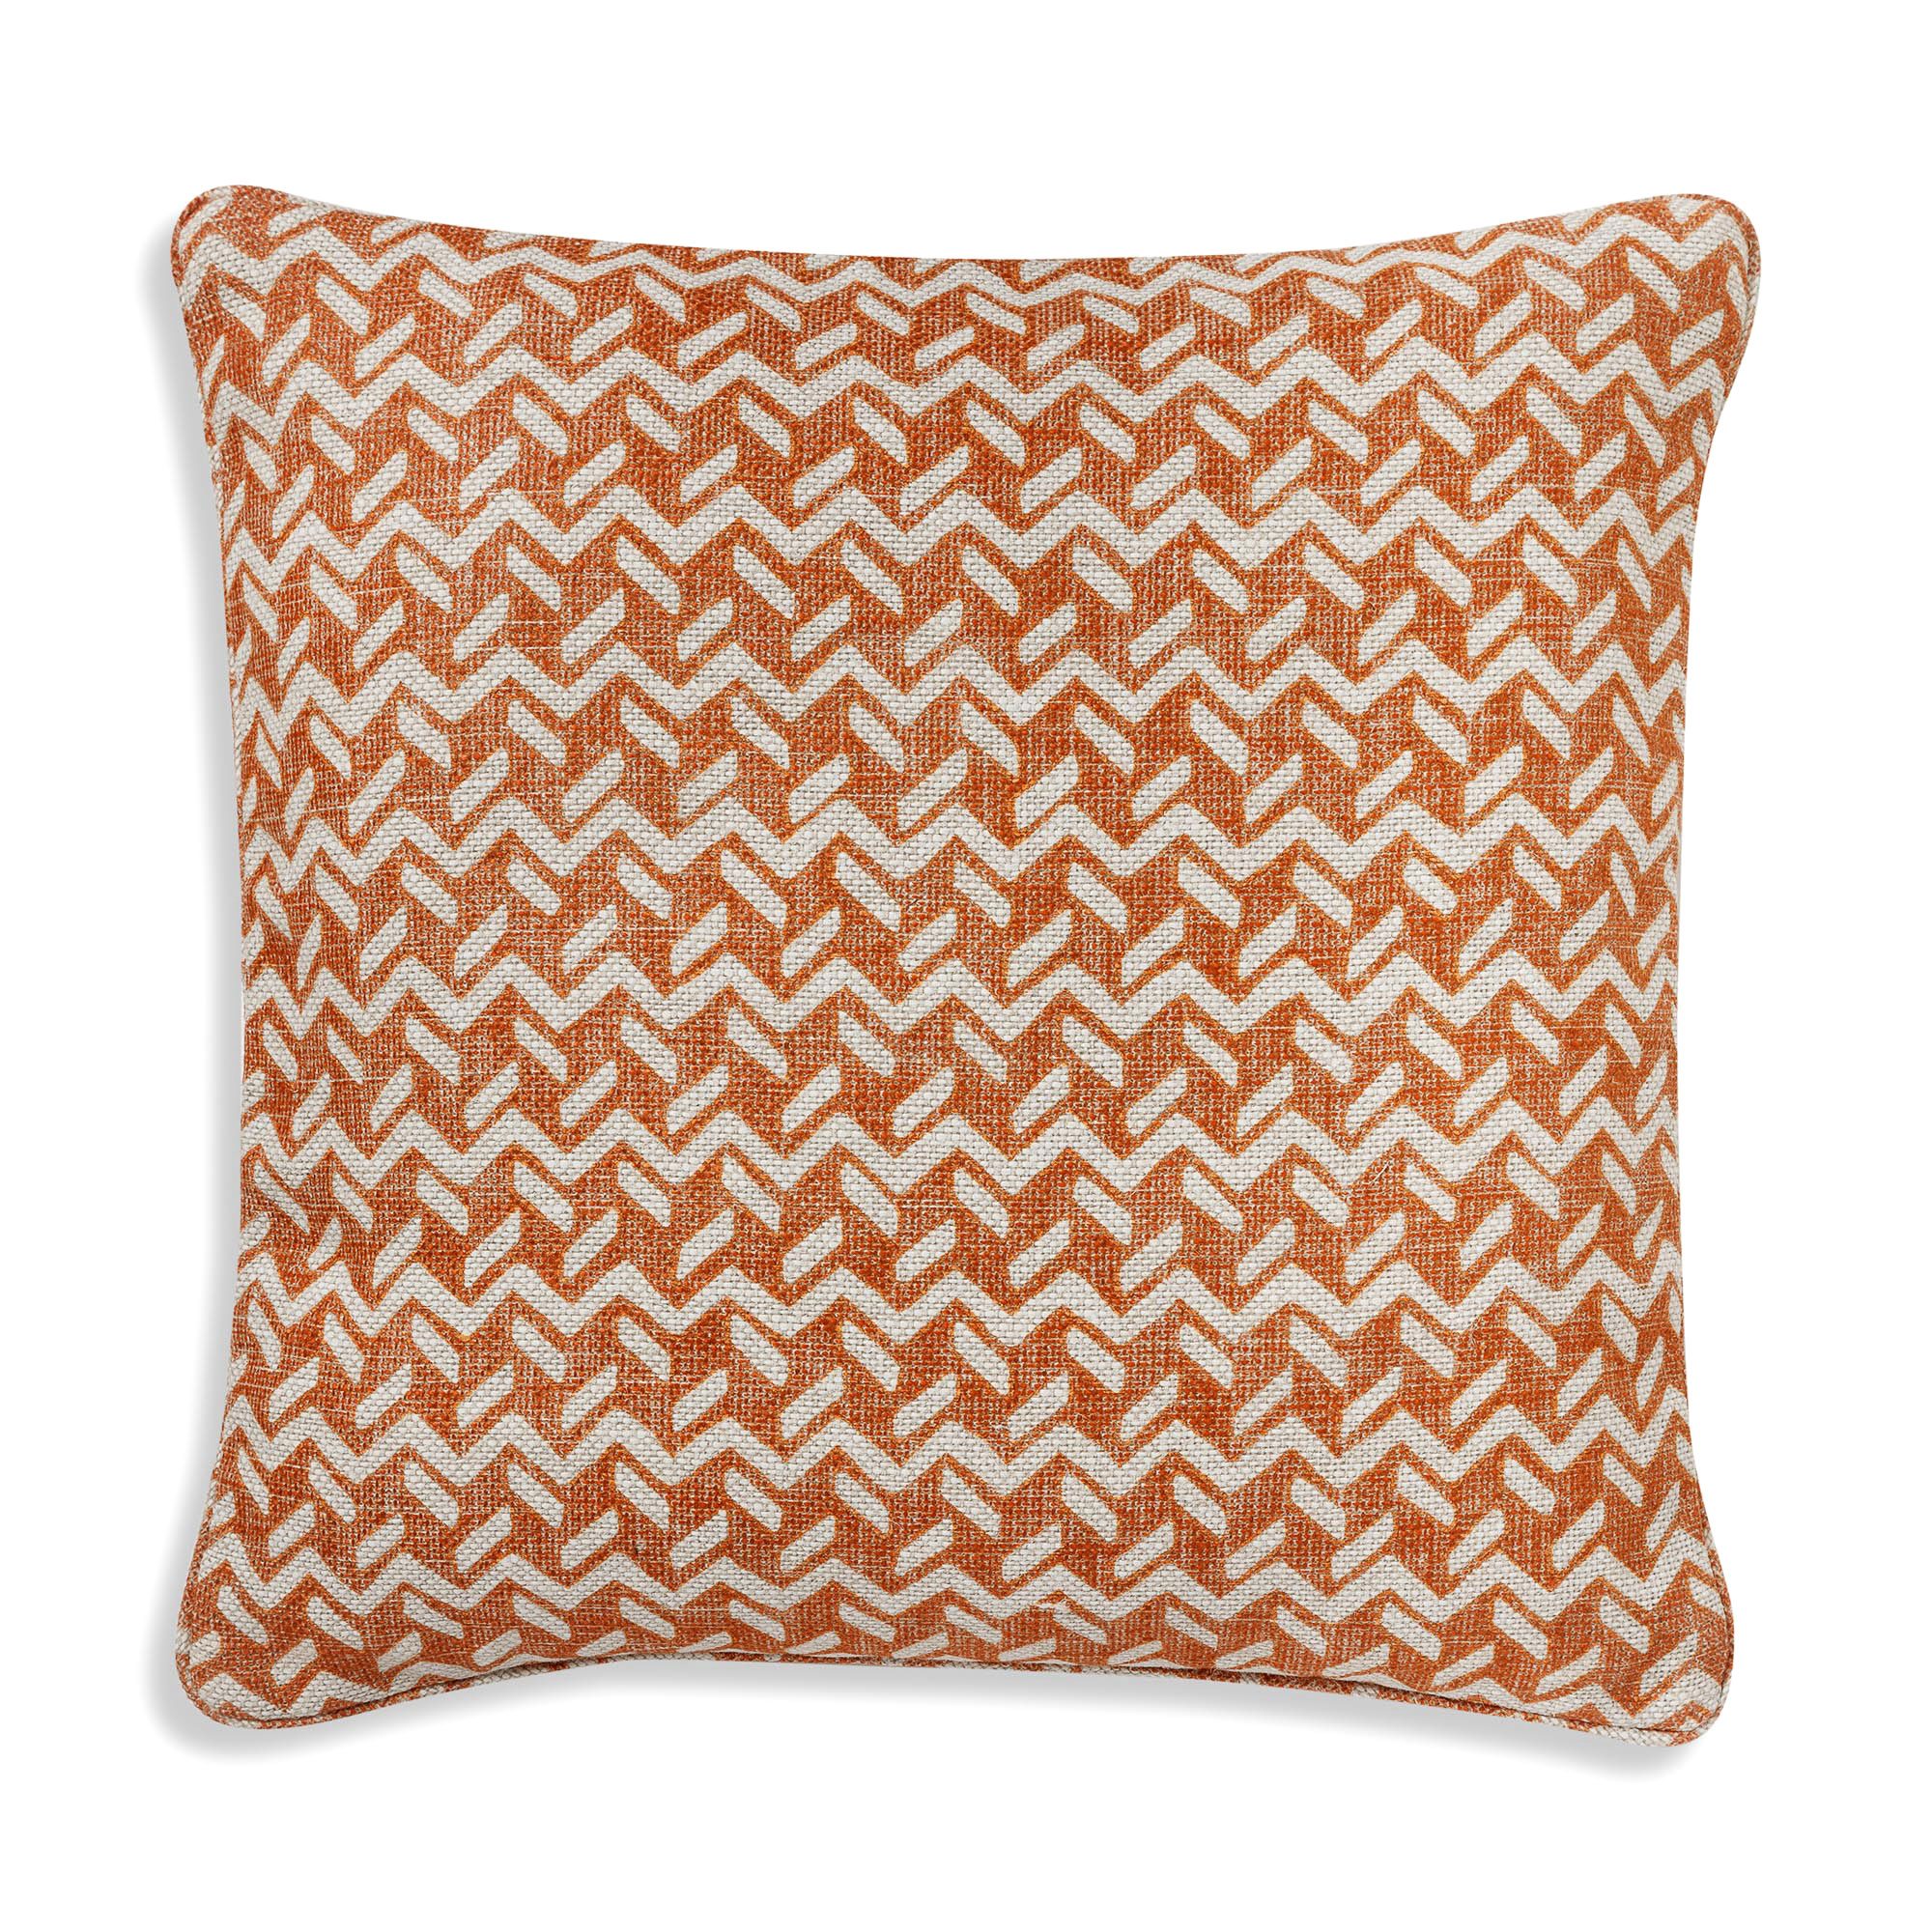 Cushion in Orange Chiltern - Indoor / Outdoor